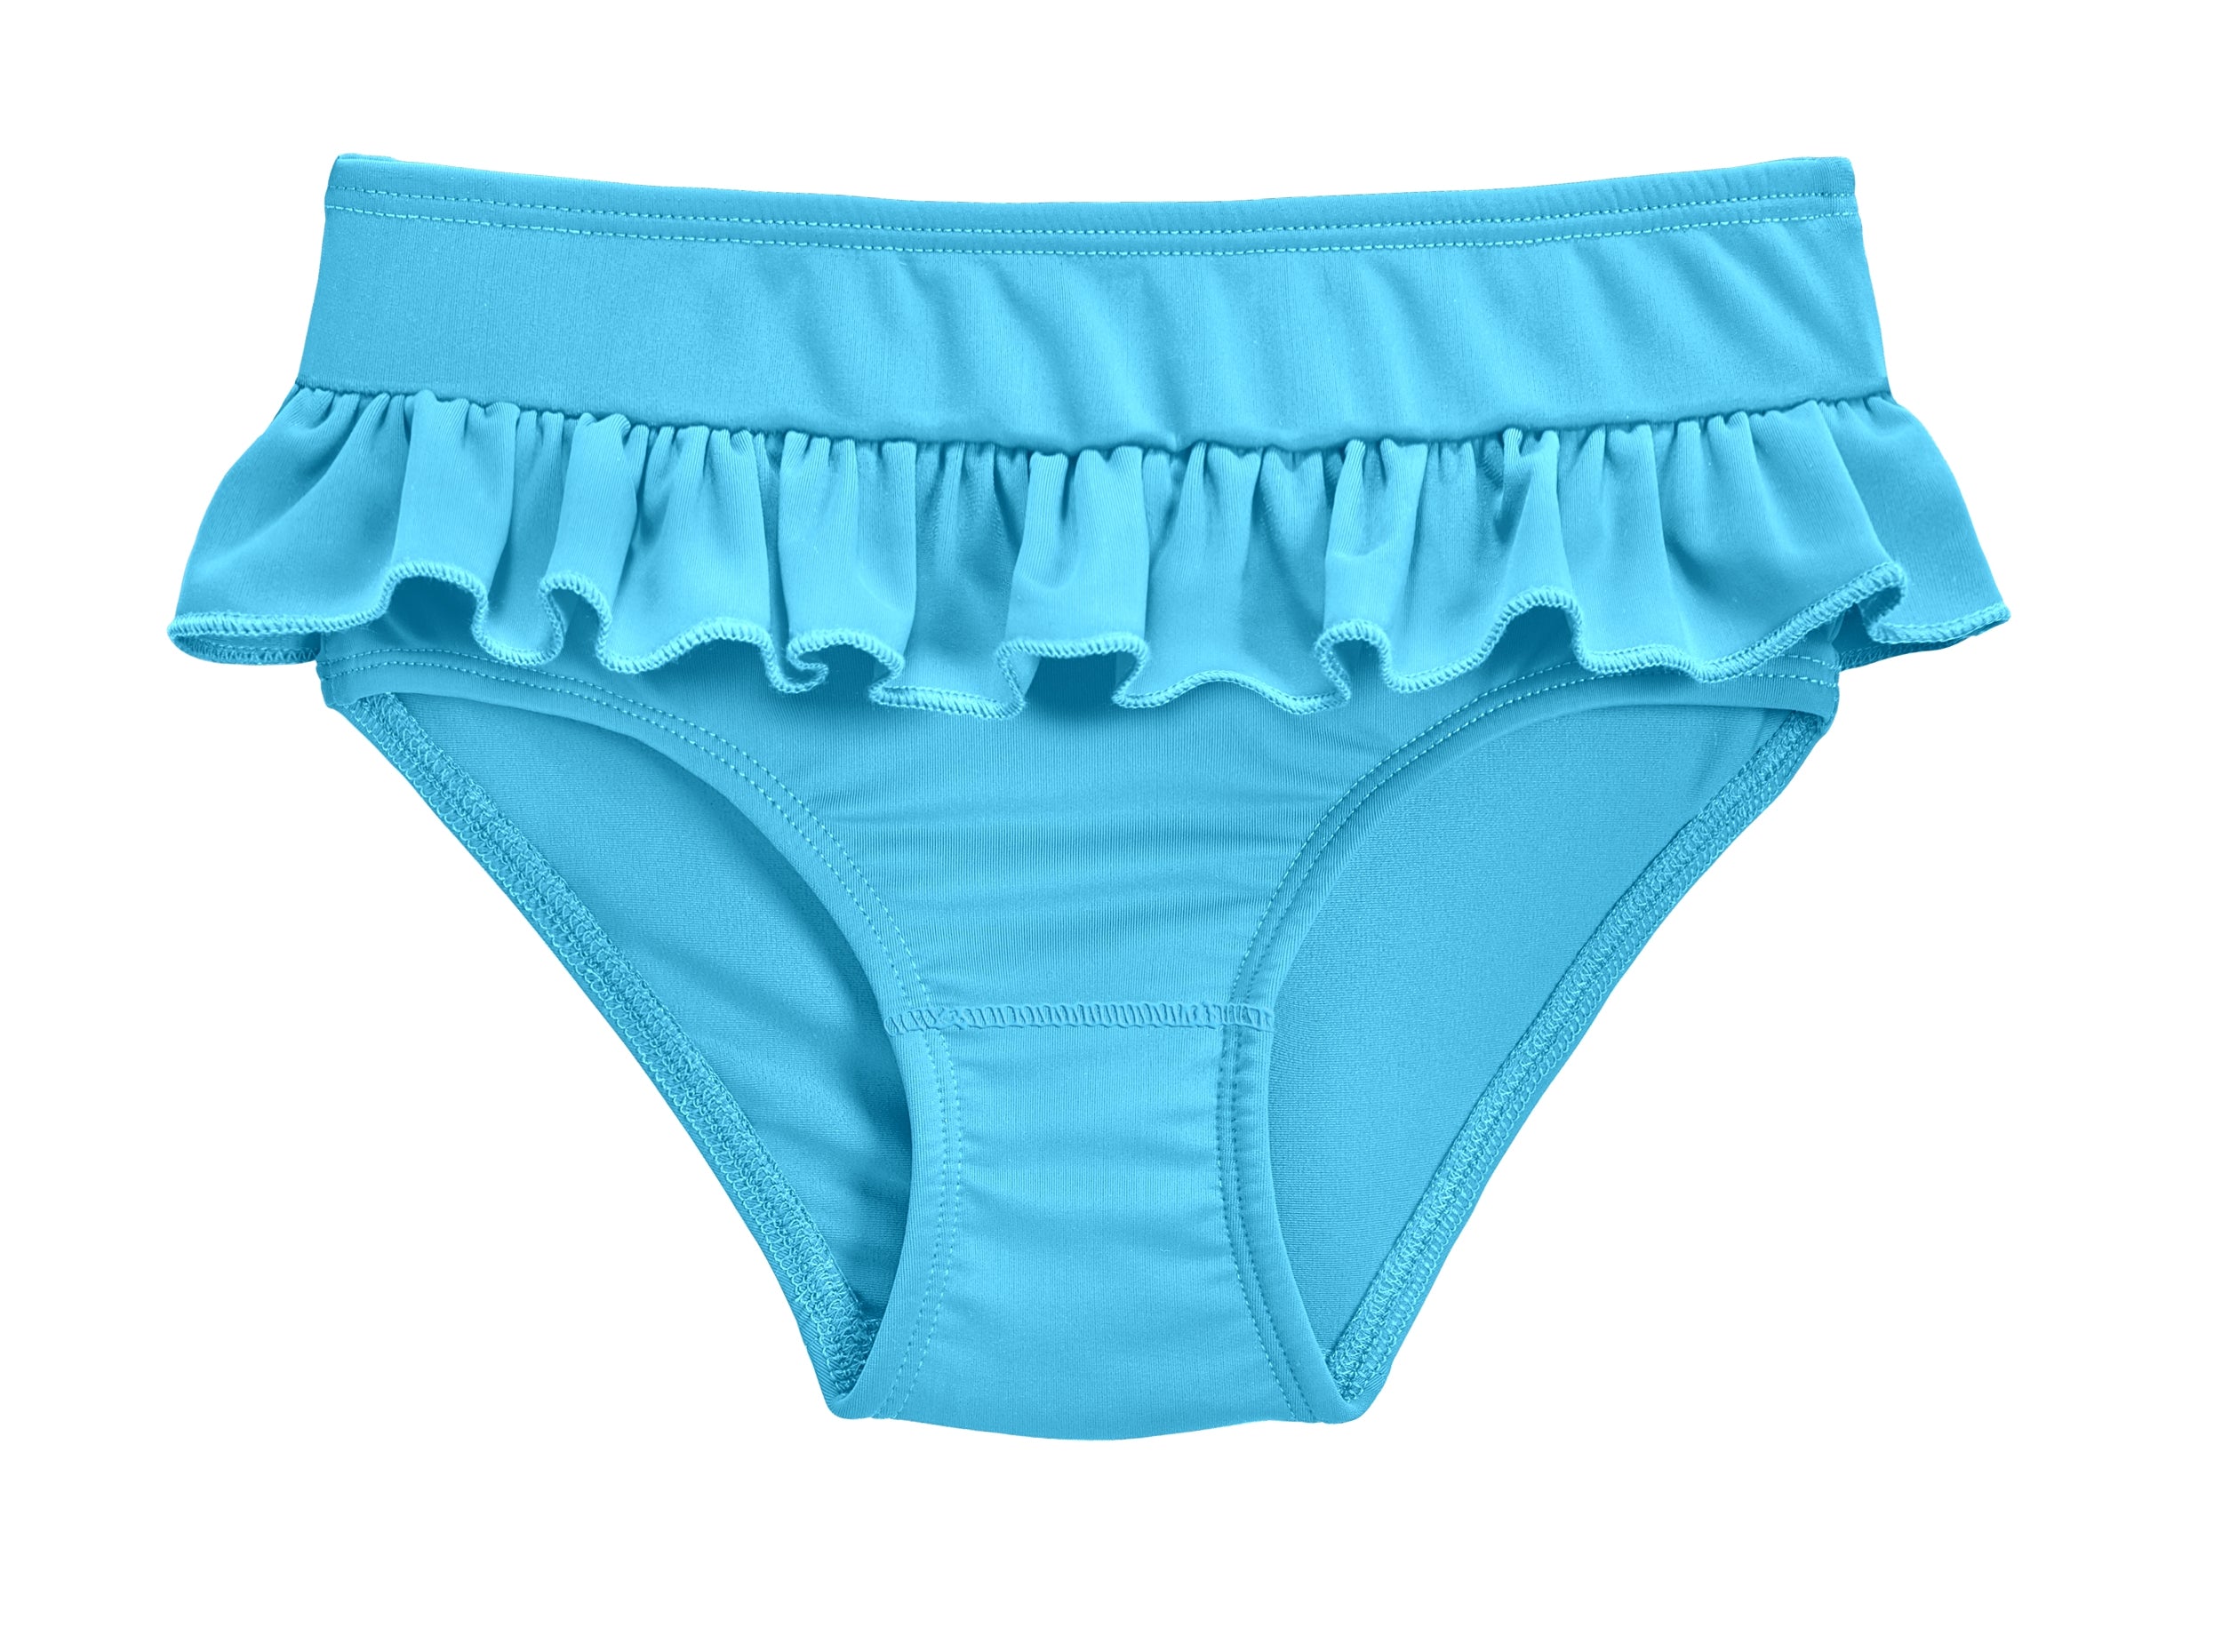 Sexy St Patricks Day Undies - Basic Low-Rise Underwear